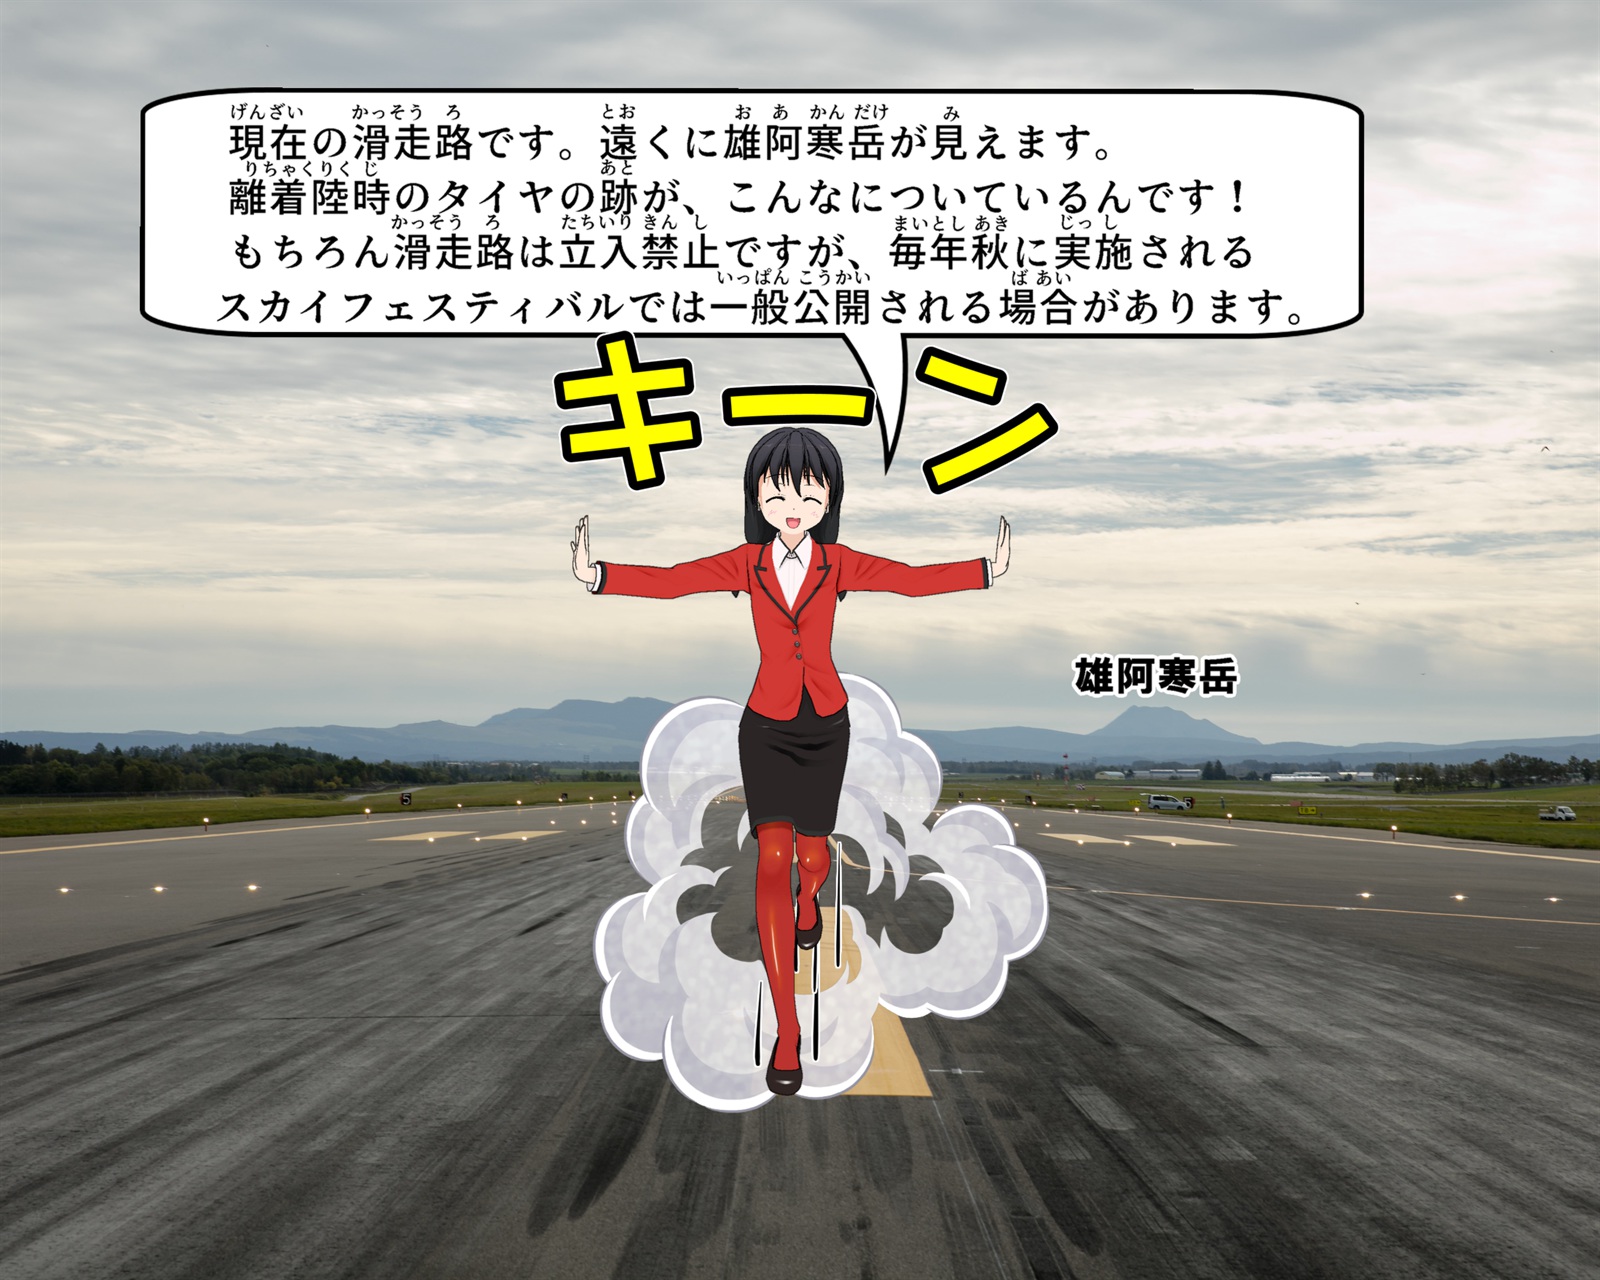 現在の女満別空港滑走路の写真の説明をしているイラスト